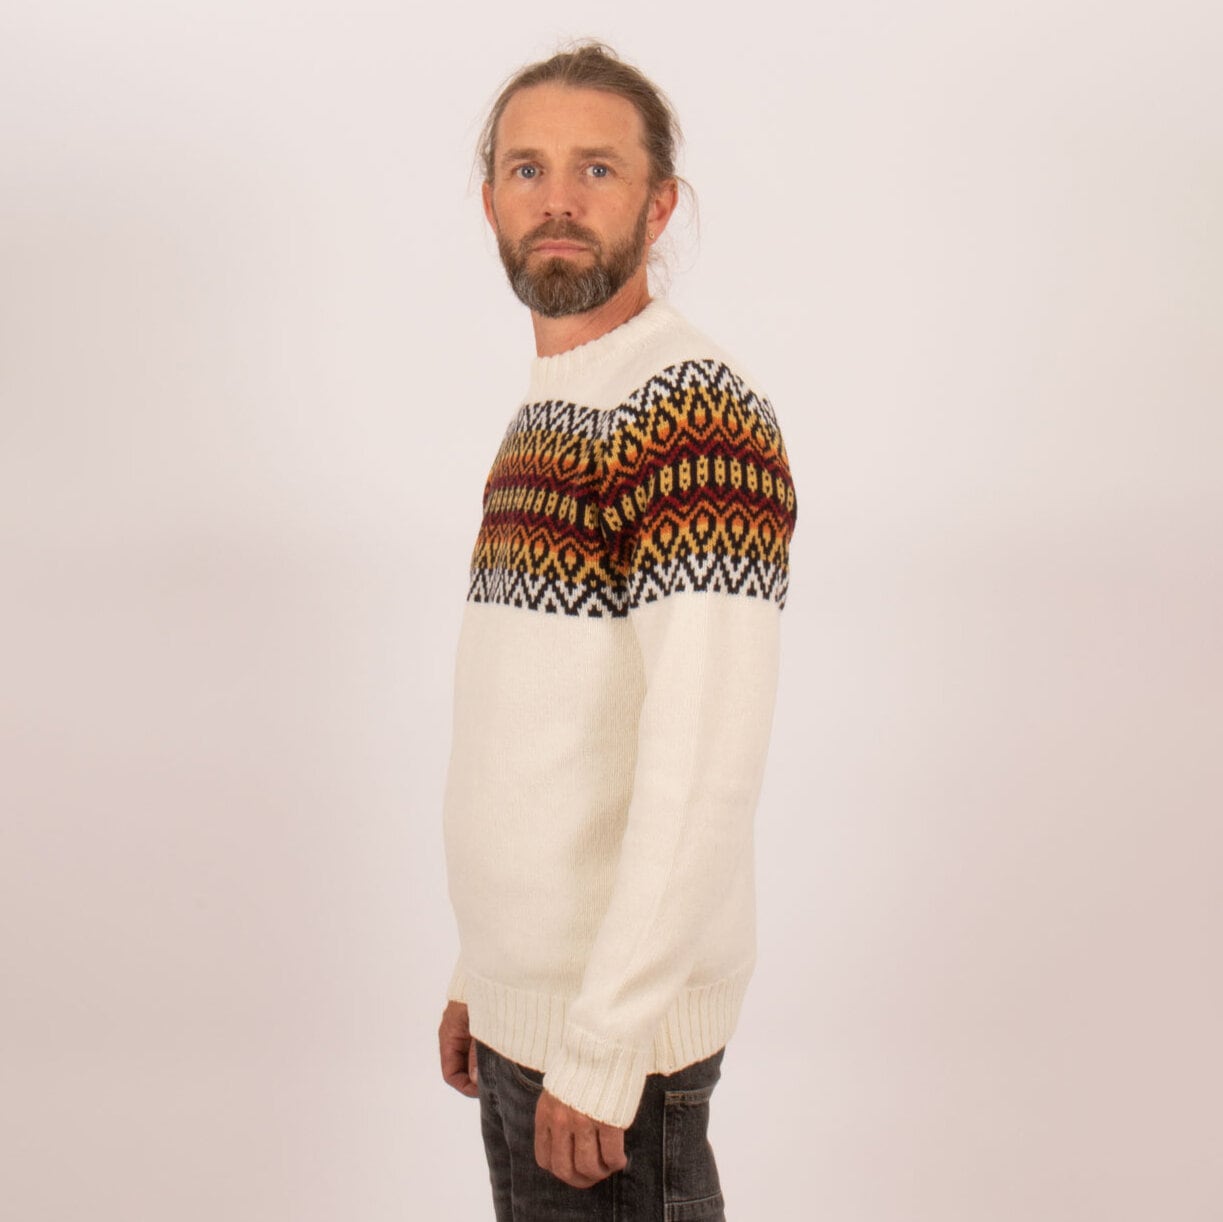 Sätila original sweater